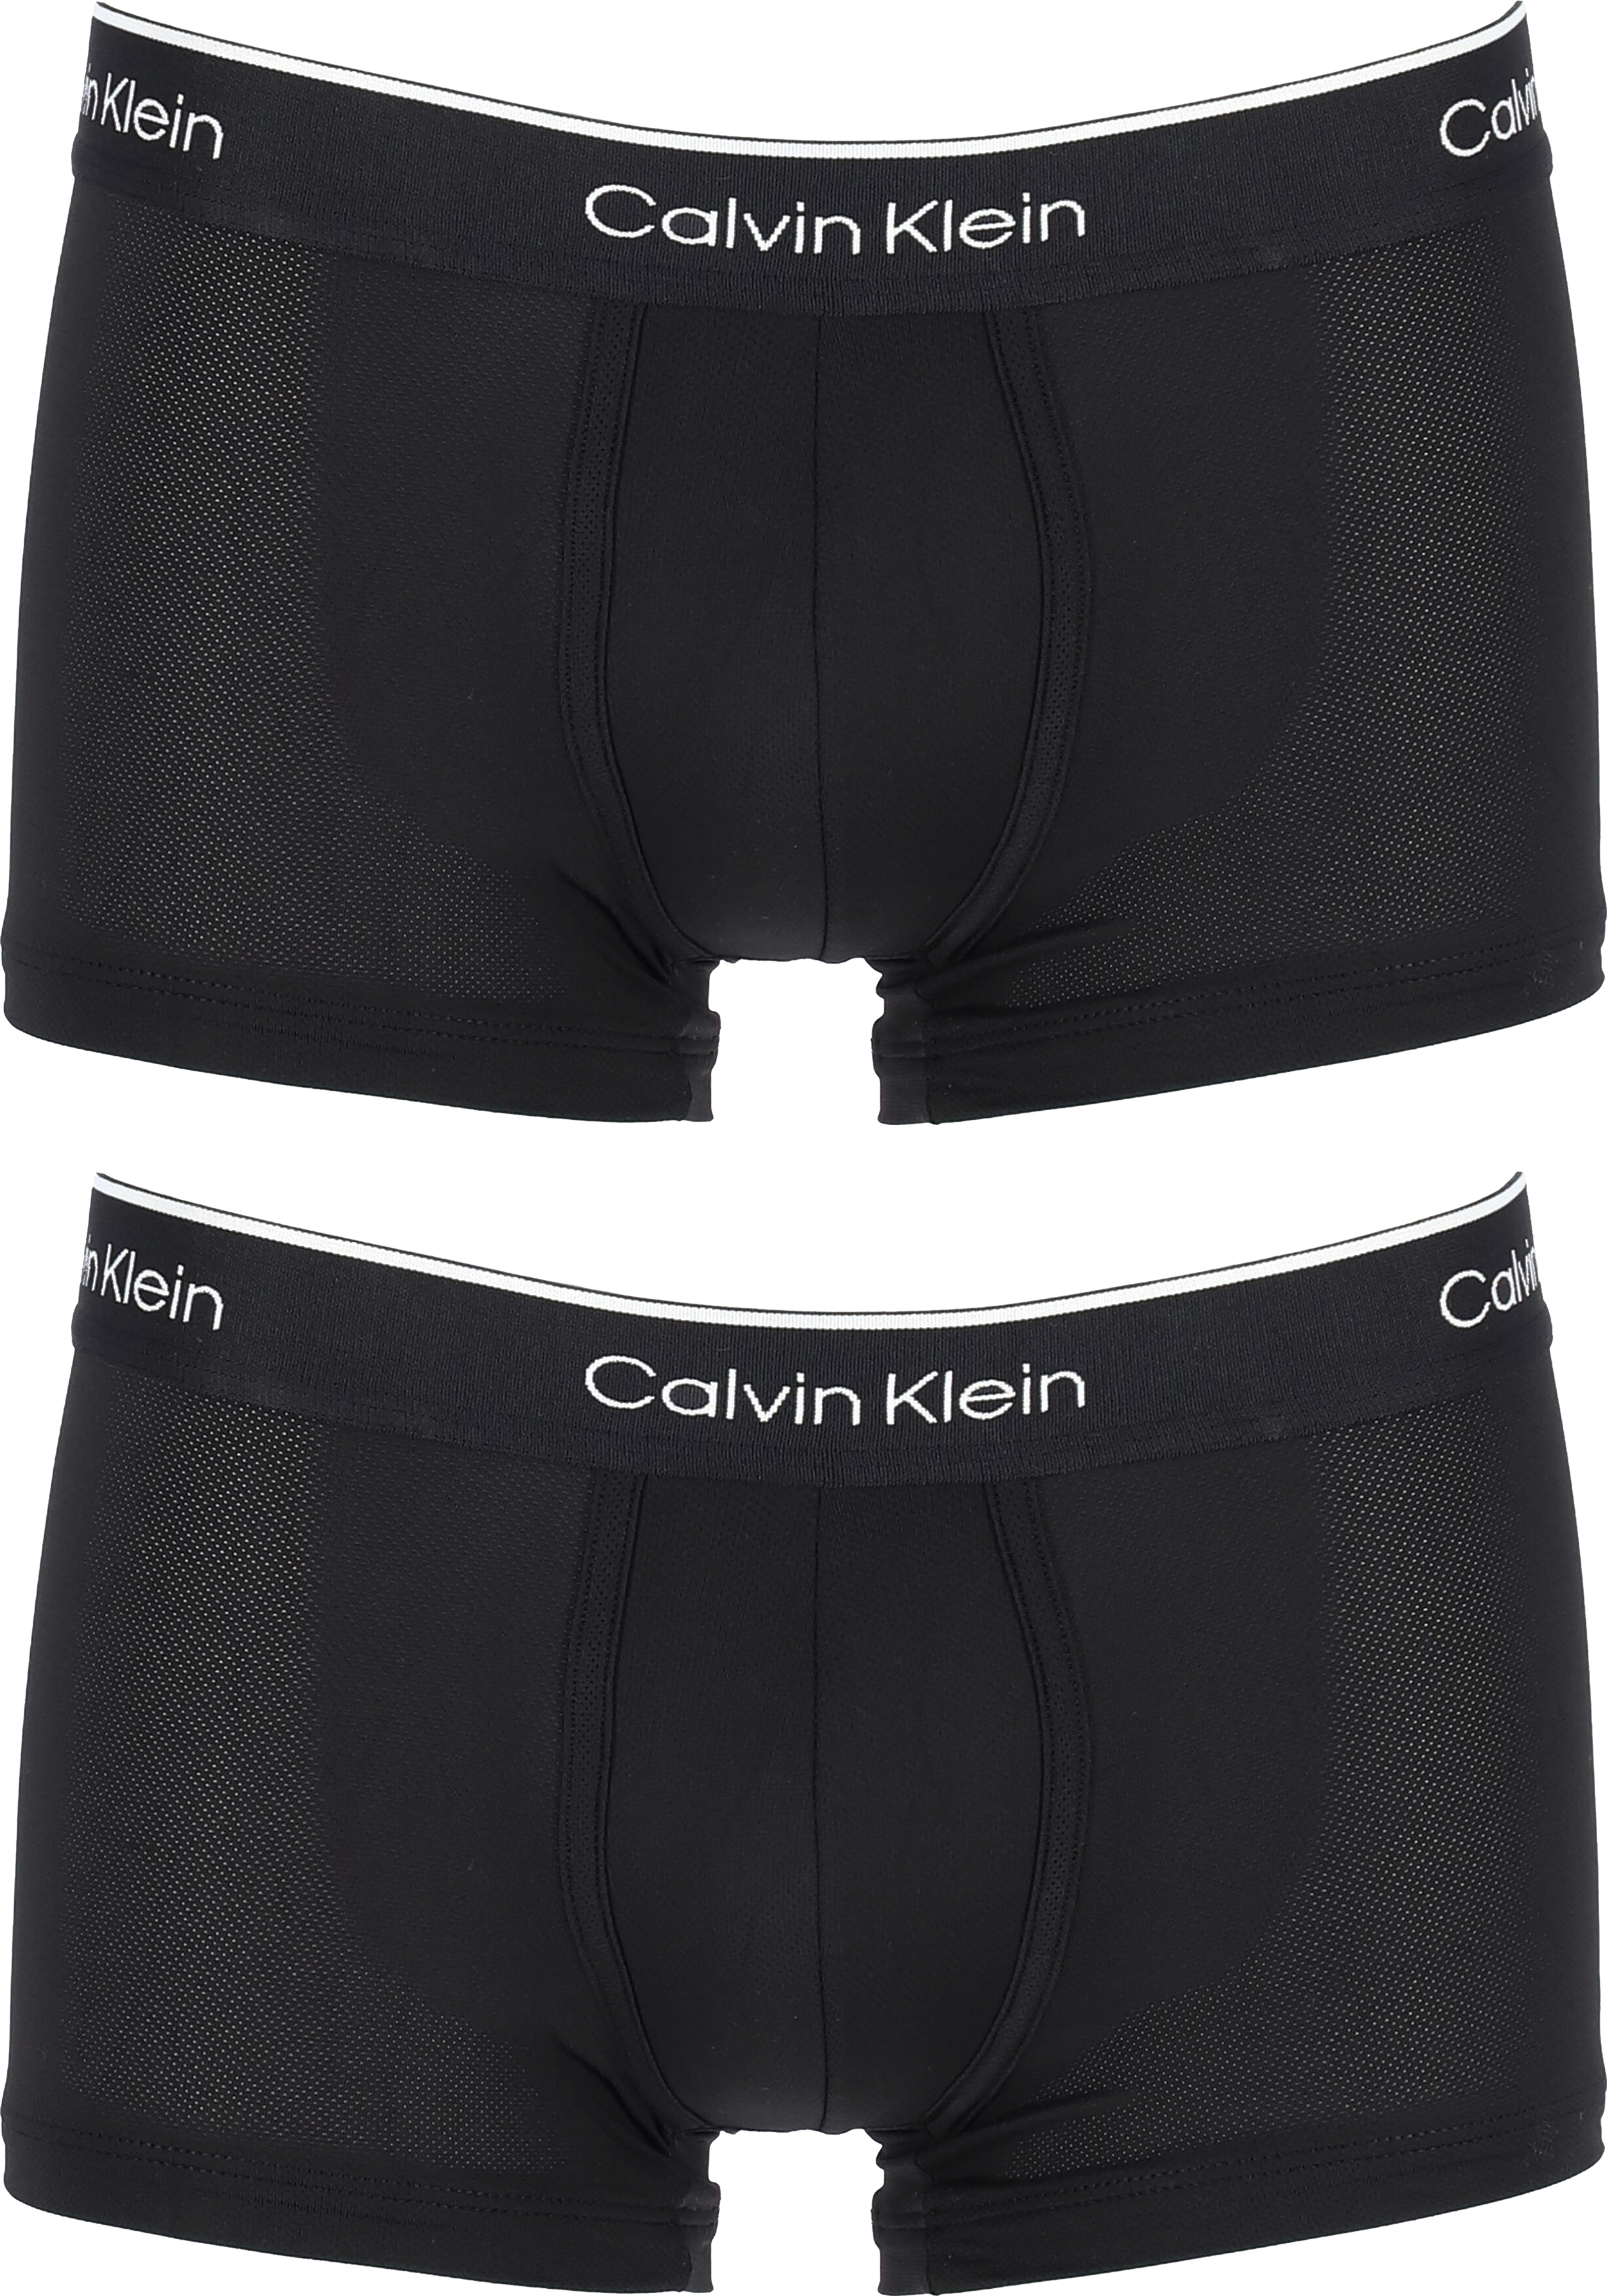 pik nerveus worden sextant Calvin Klein Pro micro low rise trunks (2-pack), microfiber lage heren... -  Shop de nieuwste voorjaarsmode